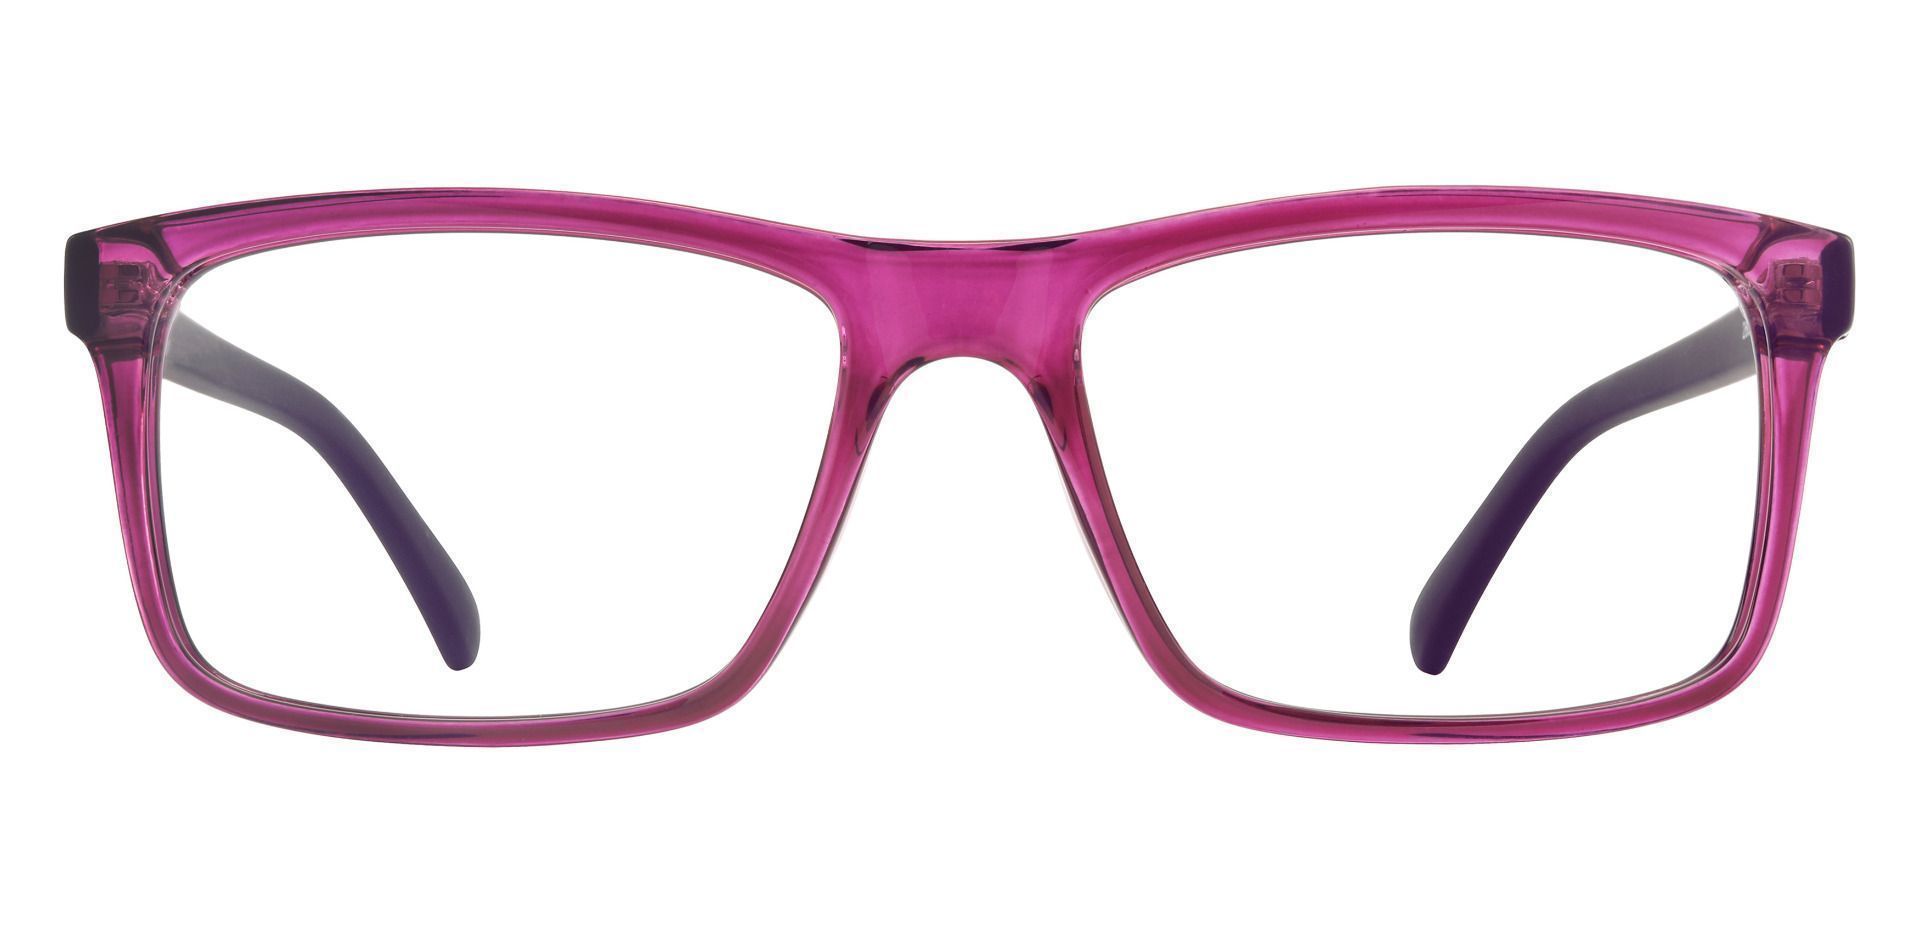 Matthew Rectangle Prescription Glasses - Purple